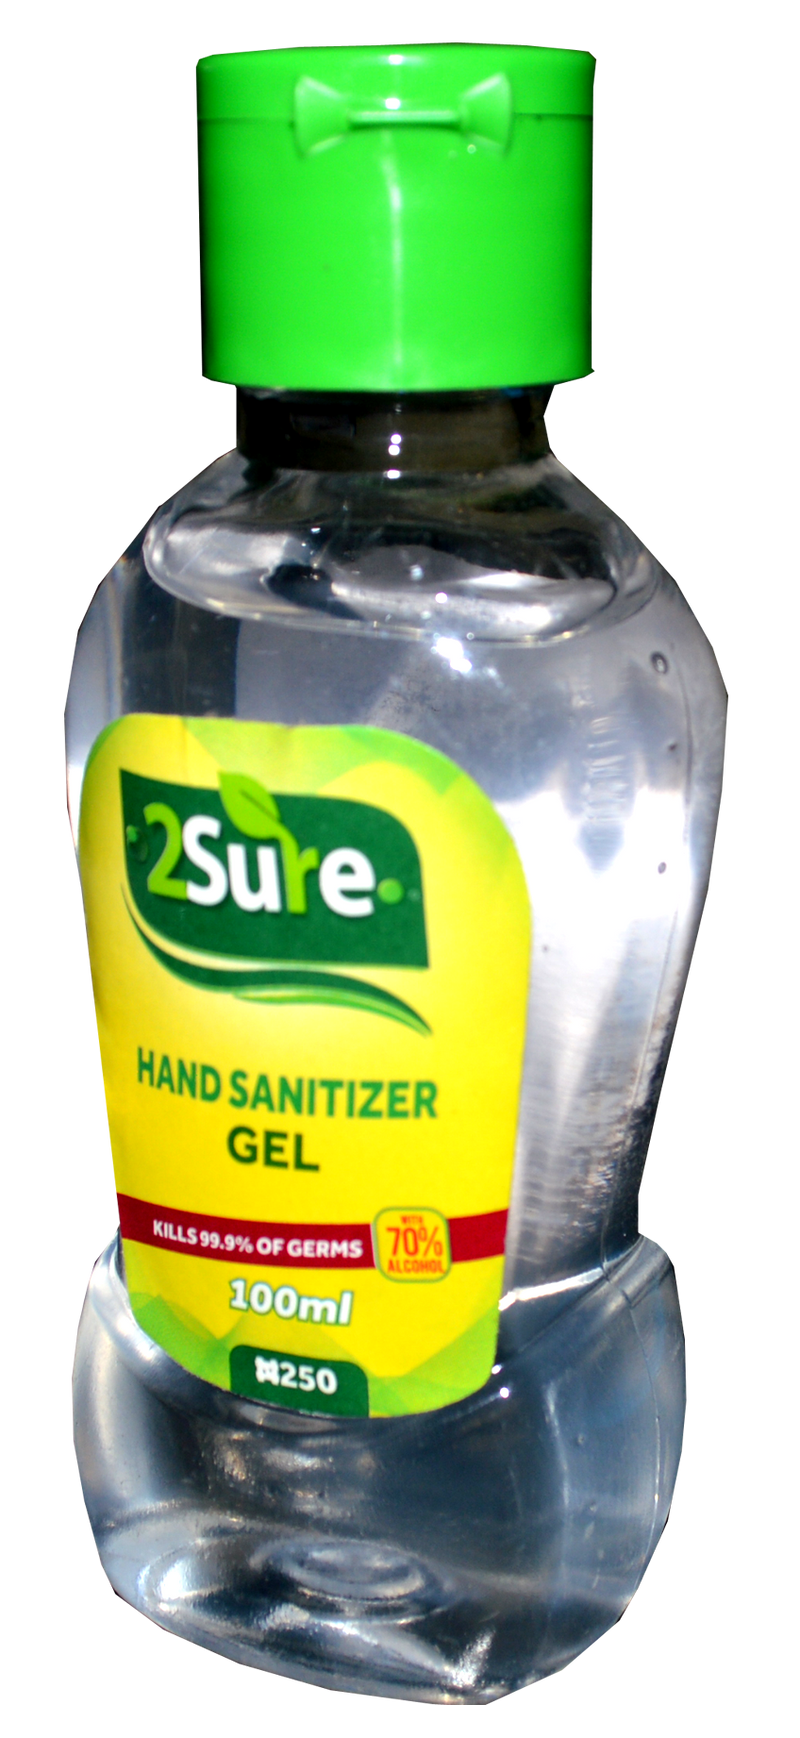 2Sure Hand Sanitizer Gel 100ml